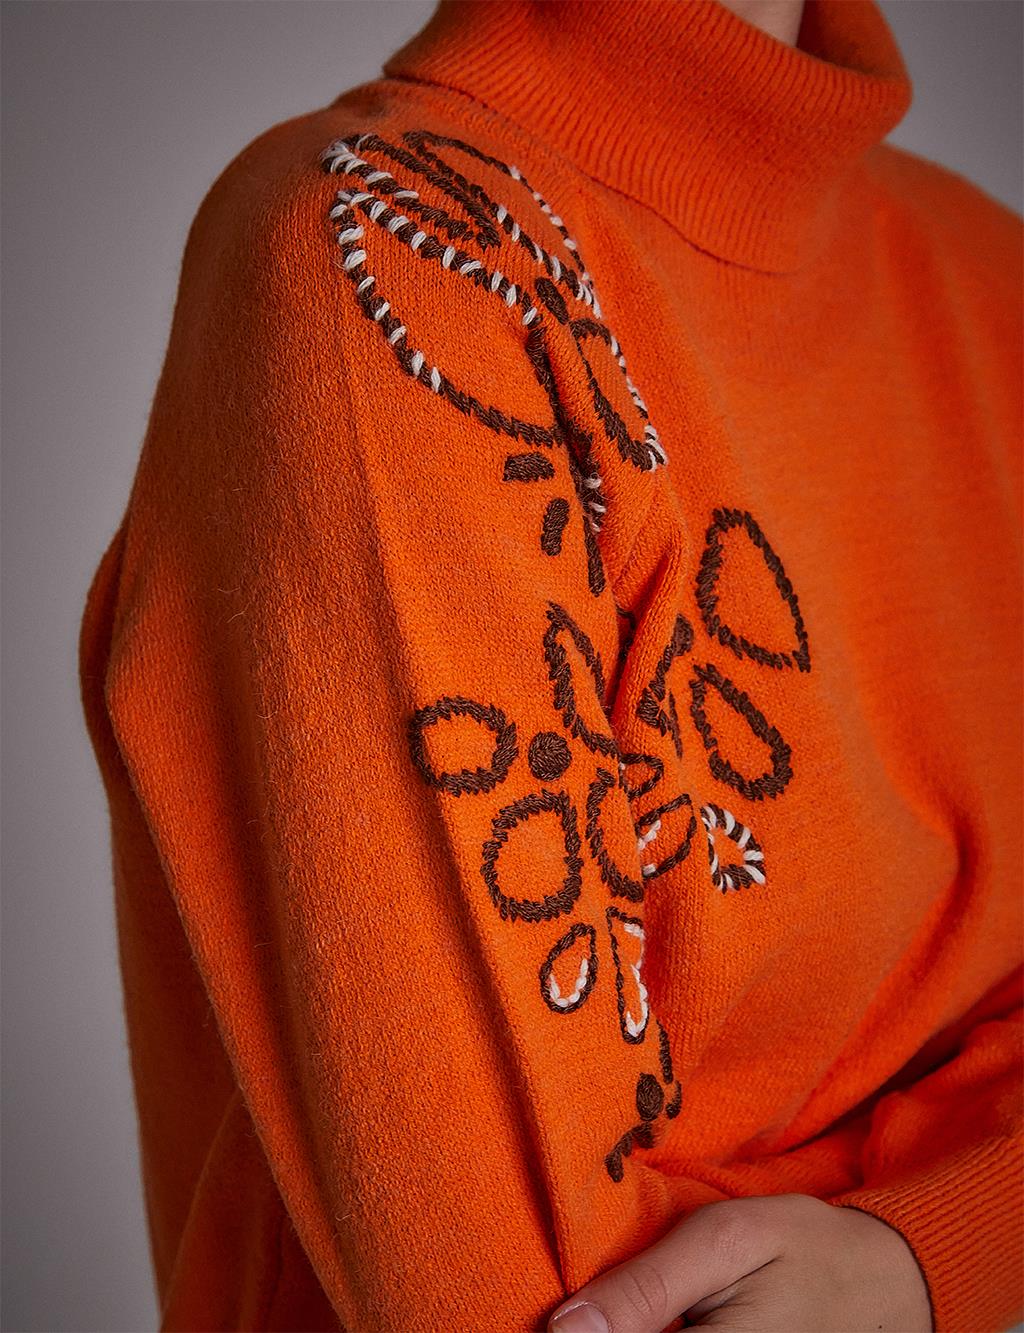 Motif Turtleneck Knitwear Tunic Orange